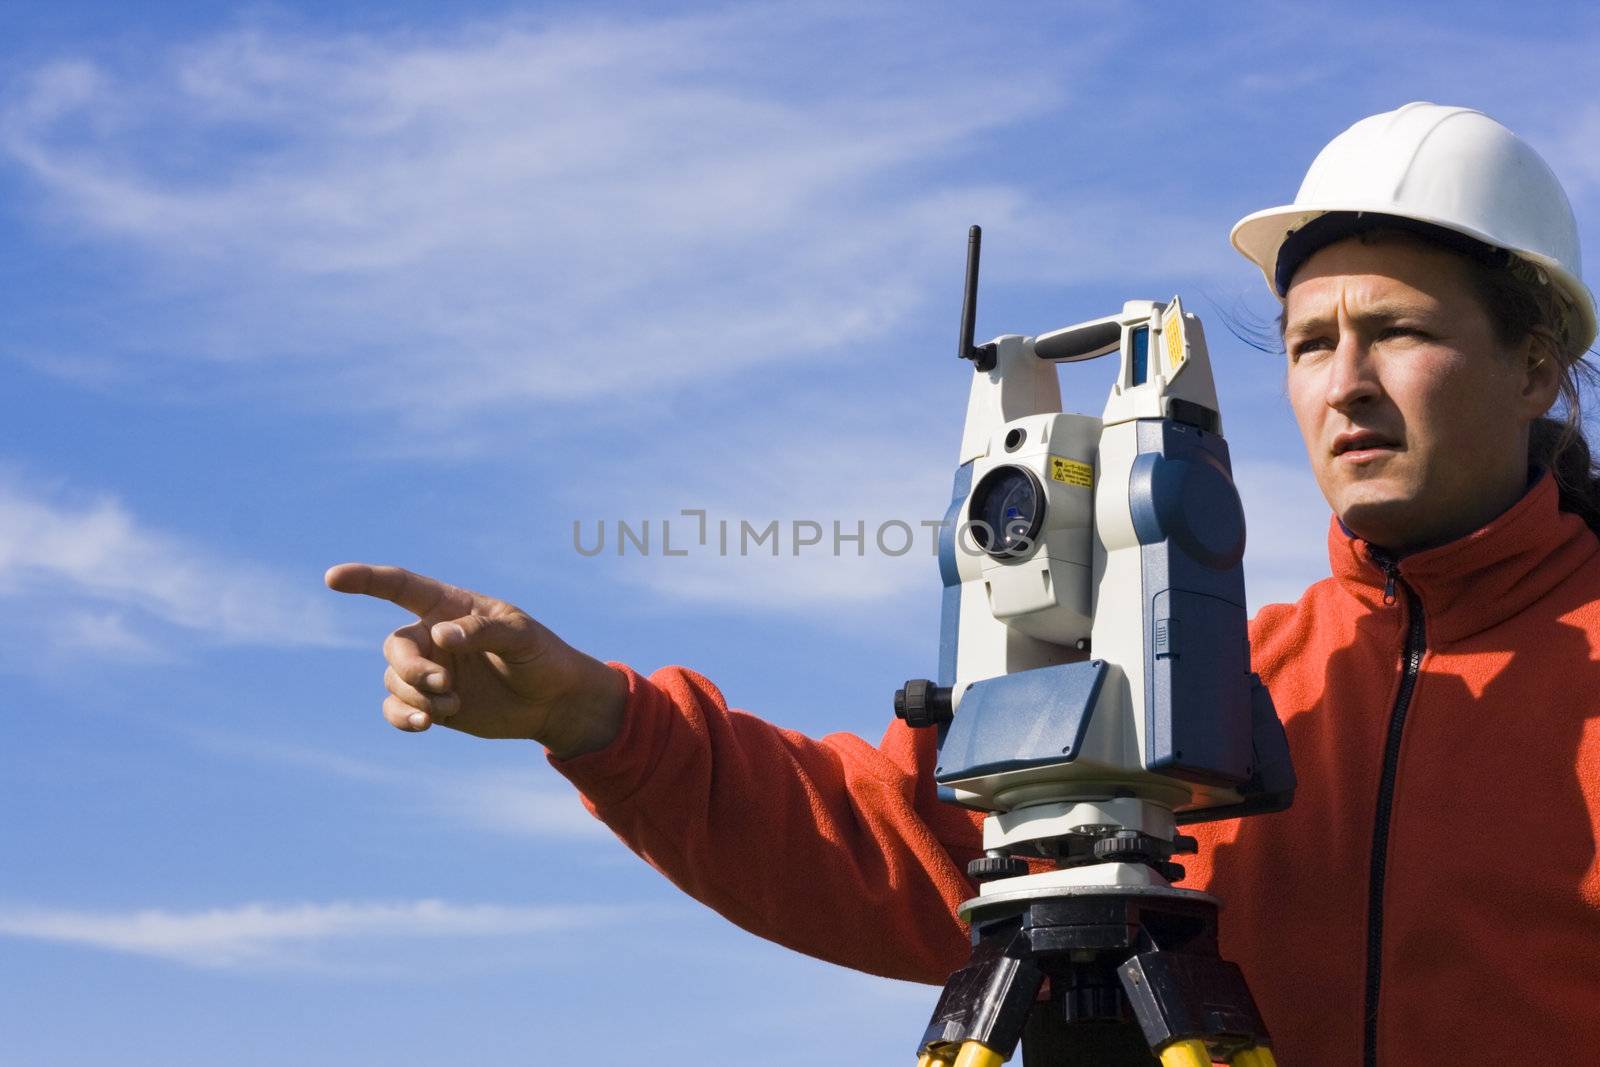 Land Surveyor in the field by benkrut